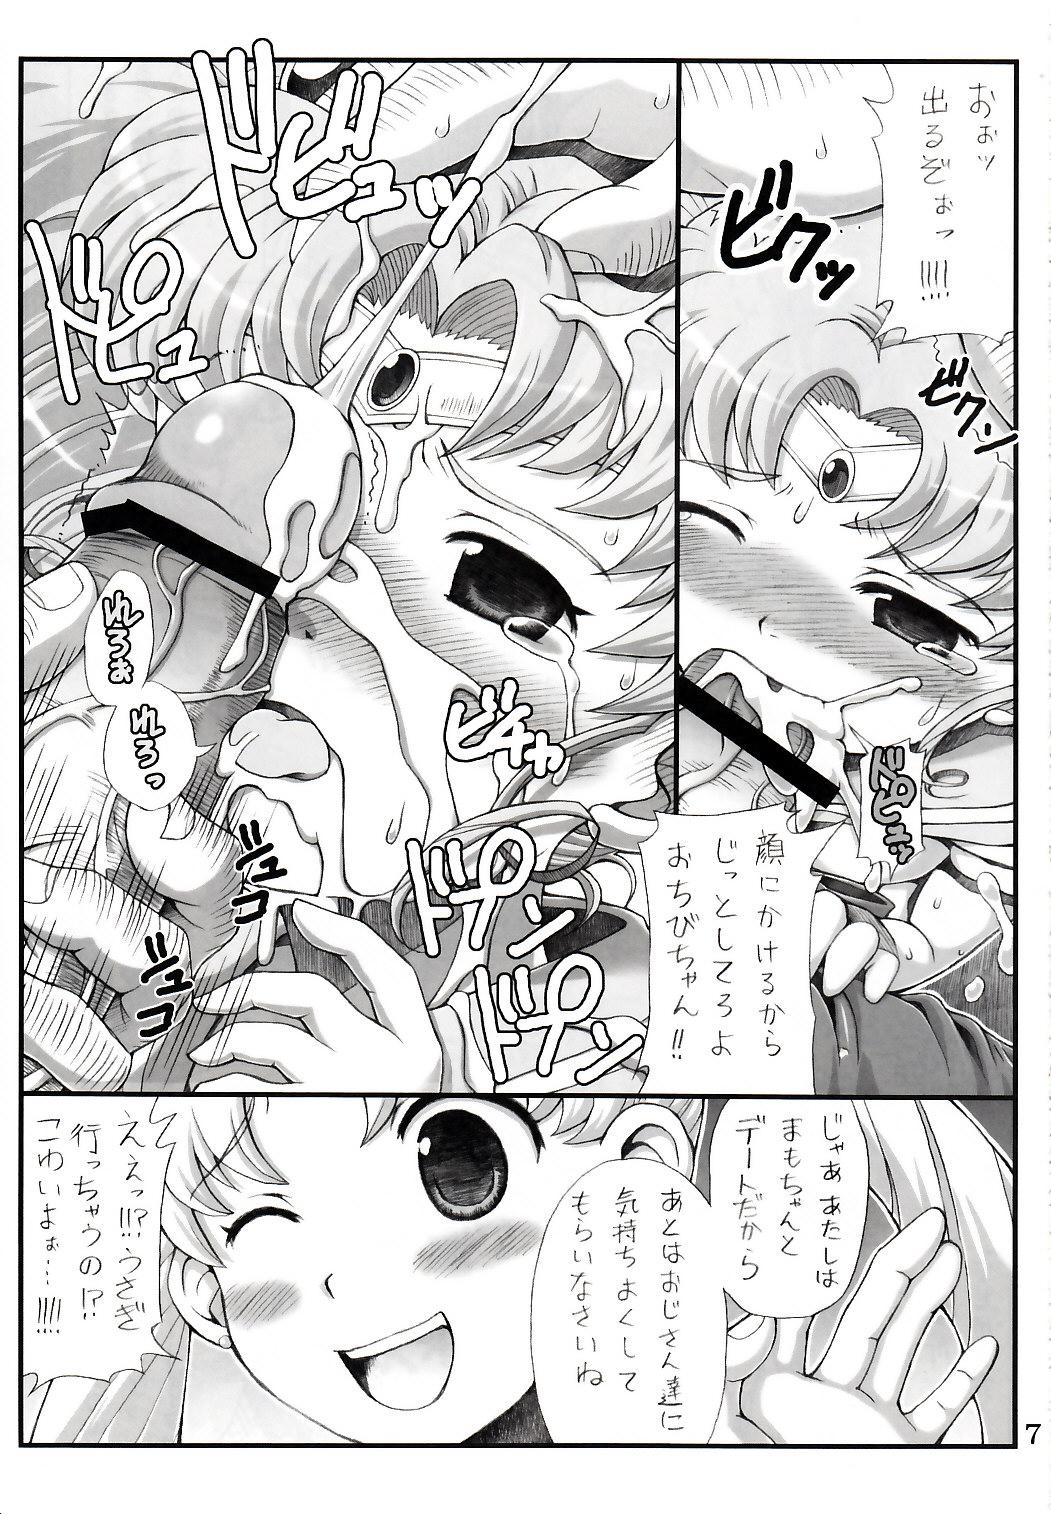 Fuck Lovely Battle Suit HALF & HALF - Sailor moon Sakura taisen This - Page 7